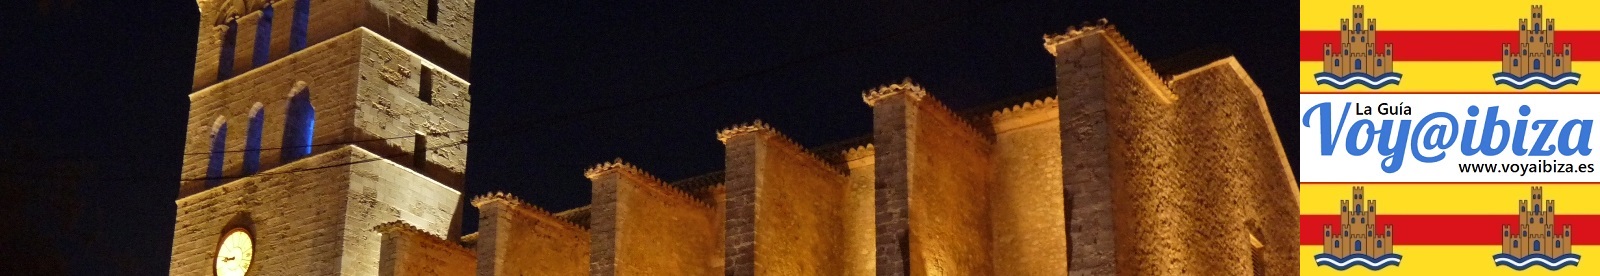 Imagen nocturna de la Caredral de Ibiza